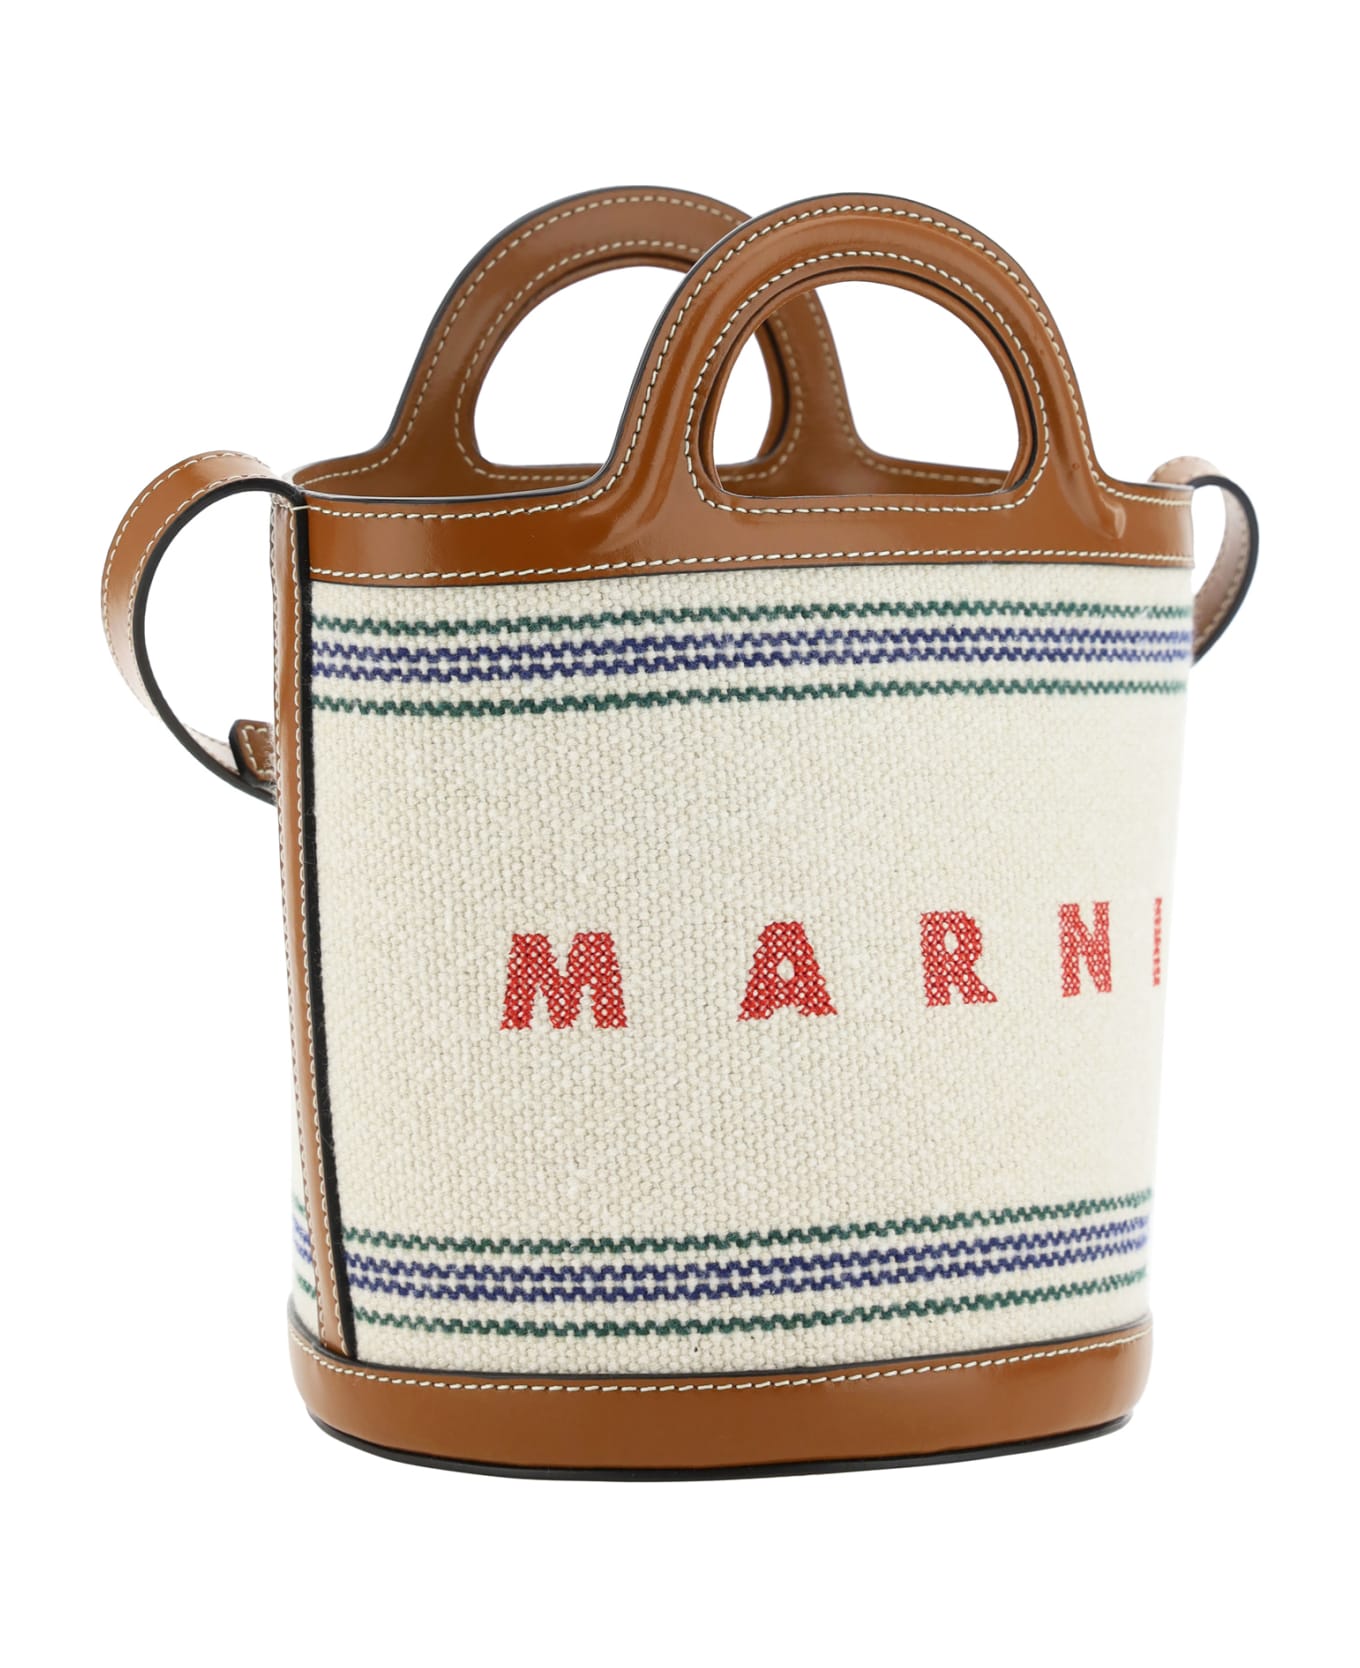 Marni Tropicalia Bucket Bag - Natural/moka